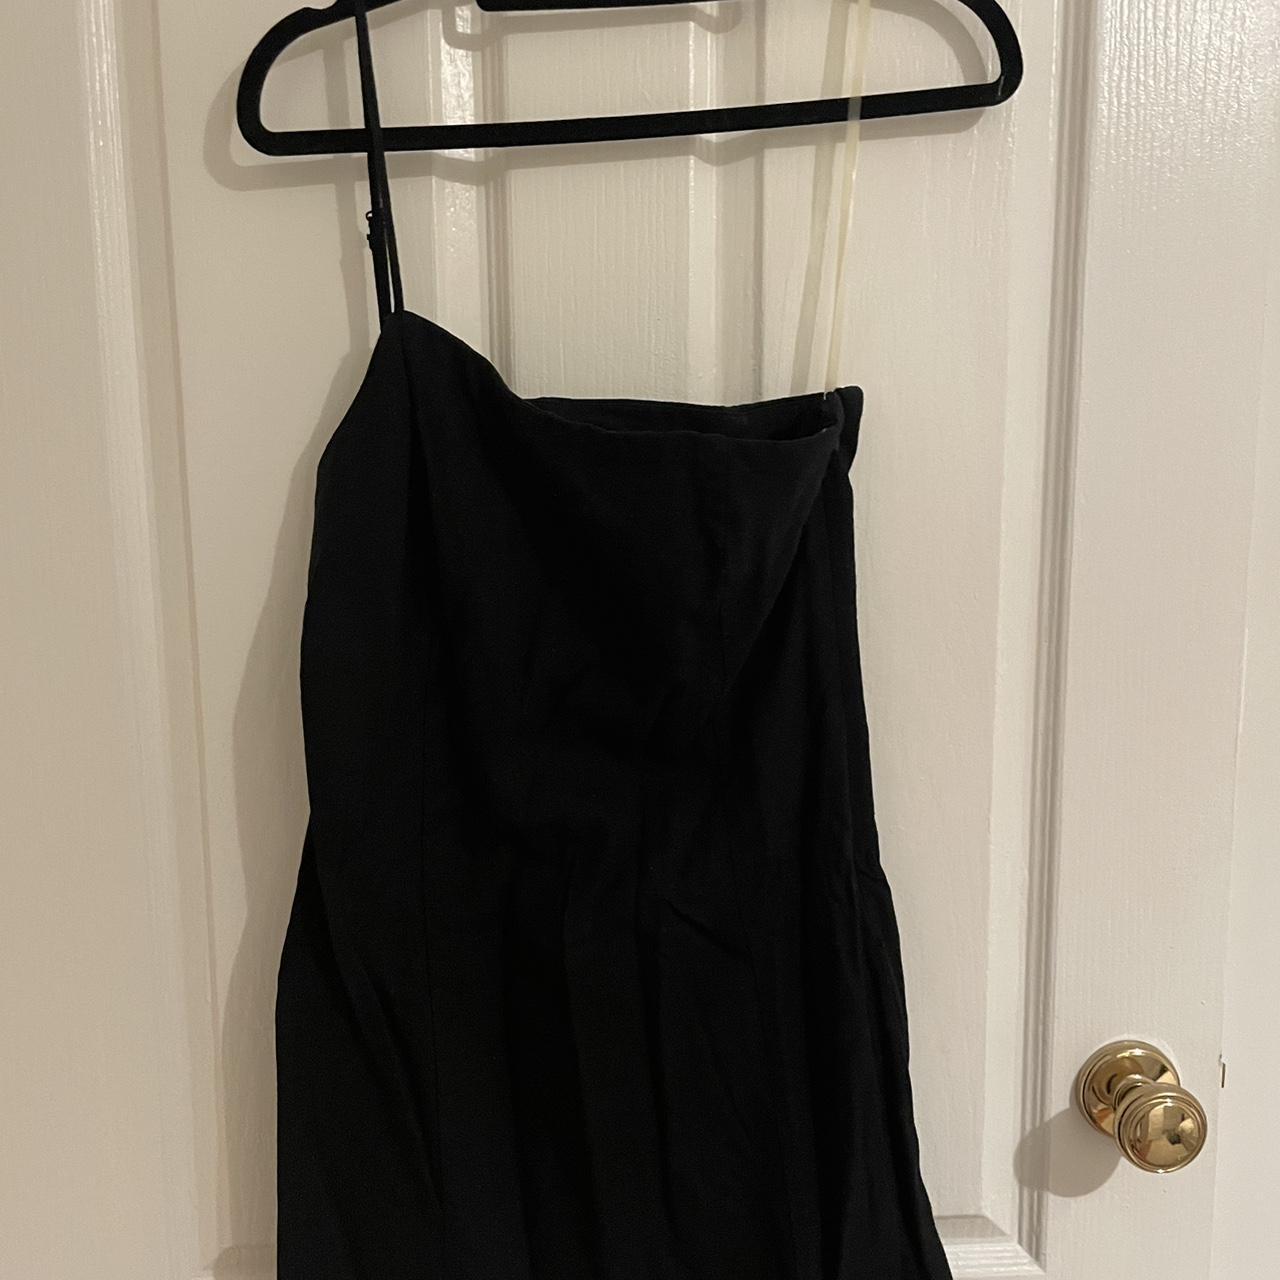 ONE SHOULDER BLACK GLASSONS DRESS - Size 8 $10 AUD - Depop